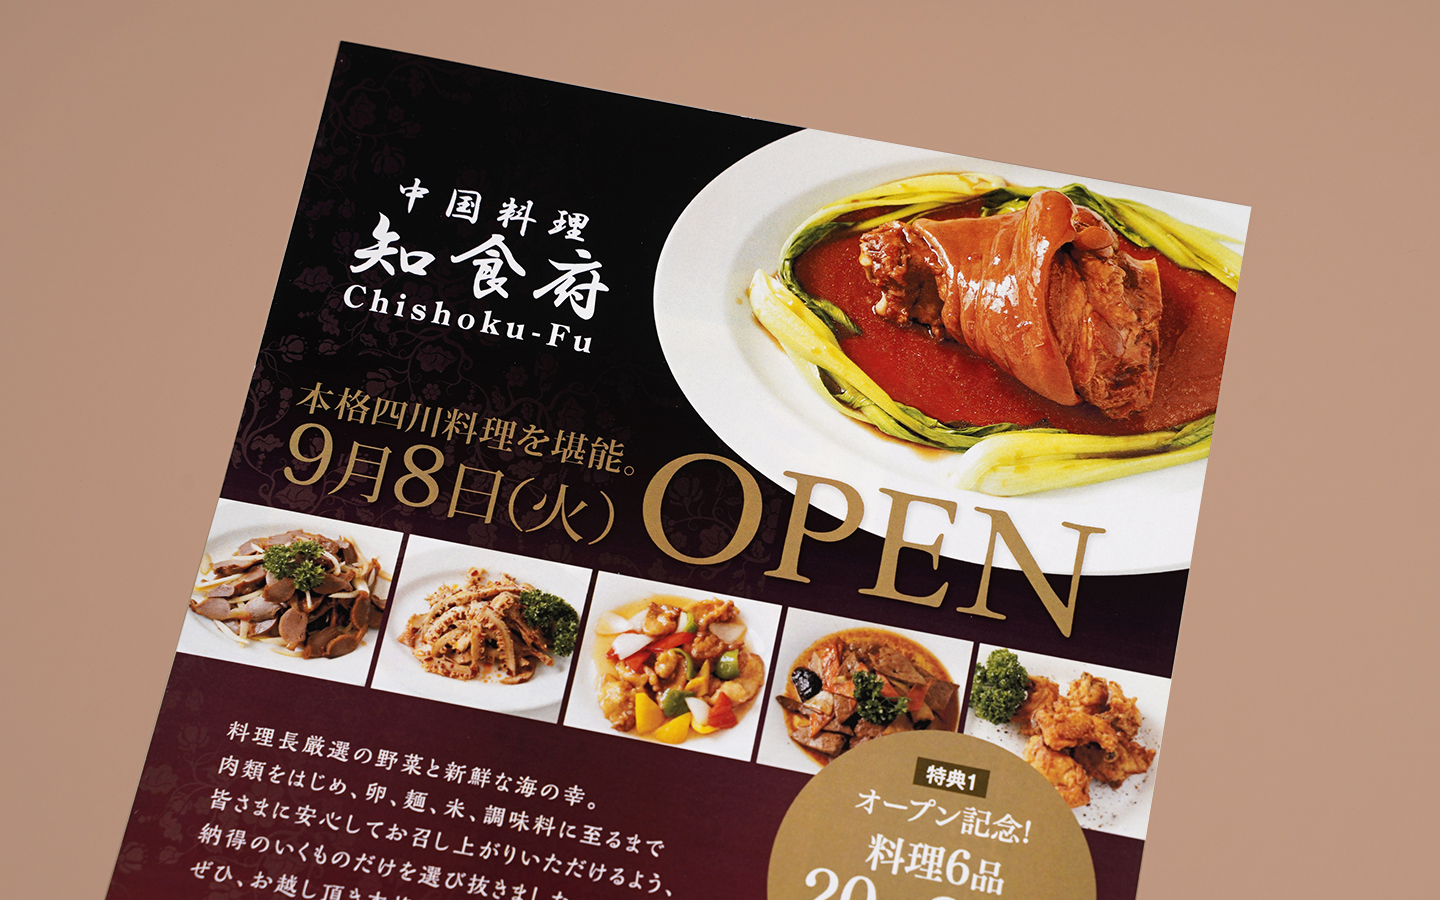 飲食店 中華料理 オープンチラシ 店内メニュー 写真撮影 京都広告デザイン Com